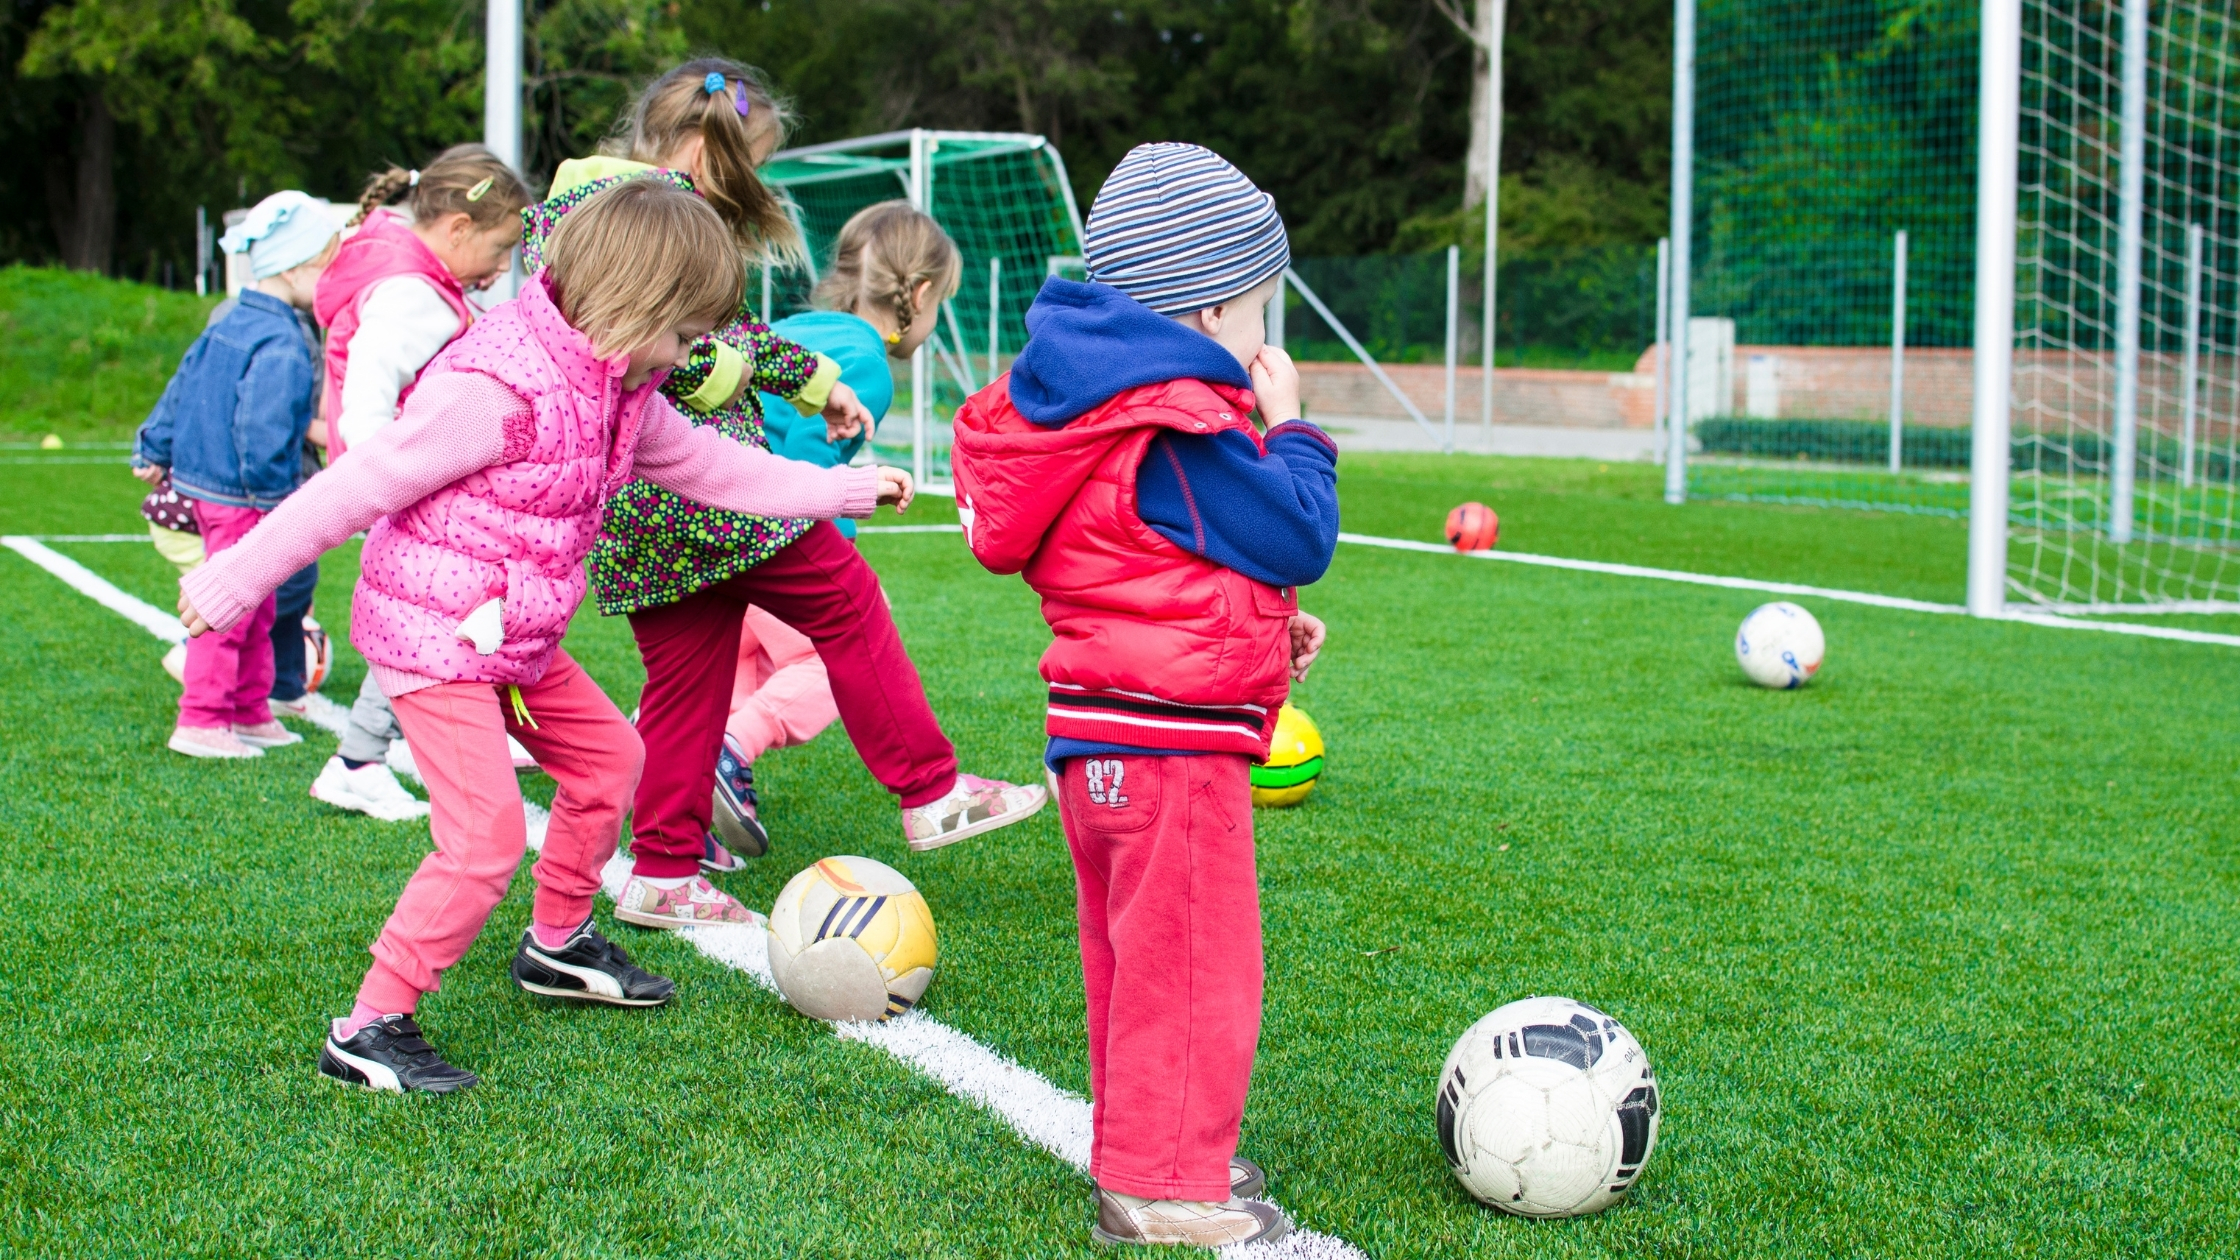 子どもの習い事にサッカーはおすすめ サッカー教室のメリットや費用を解説します まなびち